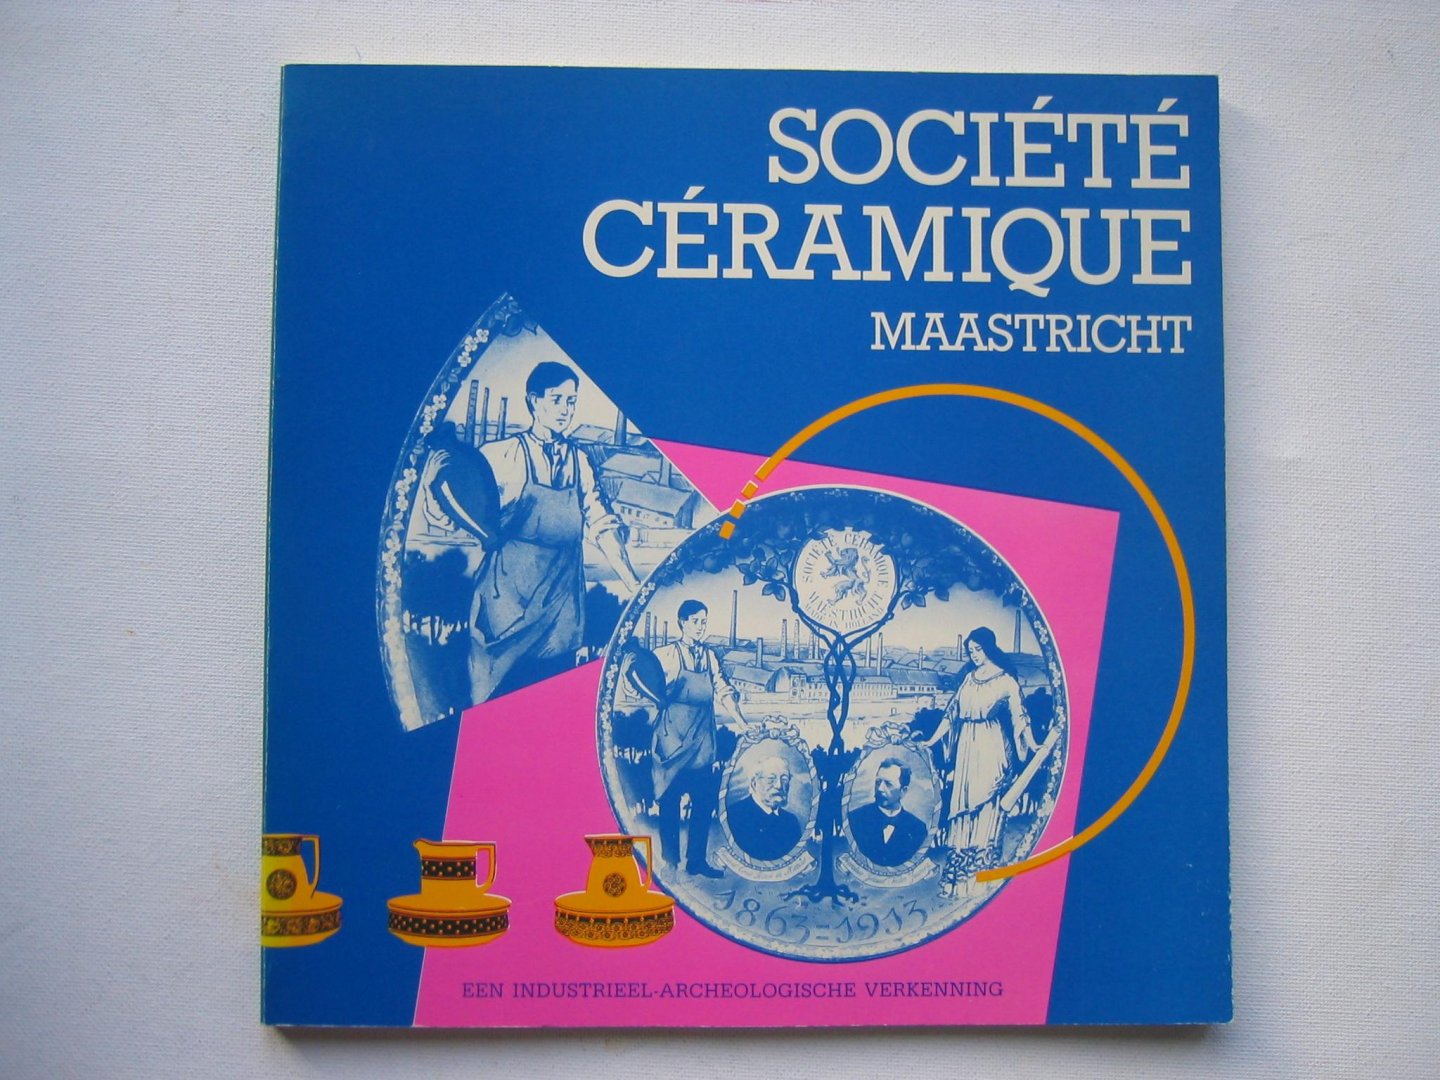 Werkgroep - Societe Ceramique Maastricht - een industrieel-archeologische verkenning